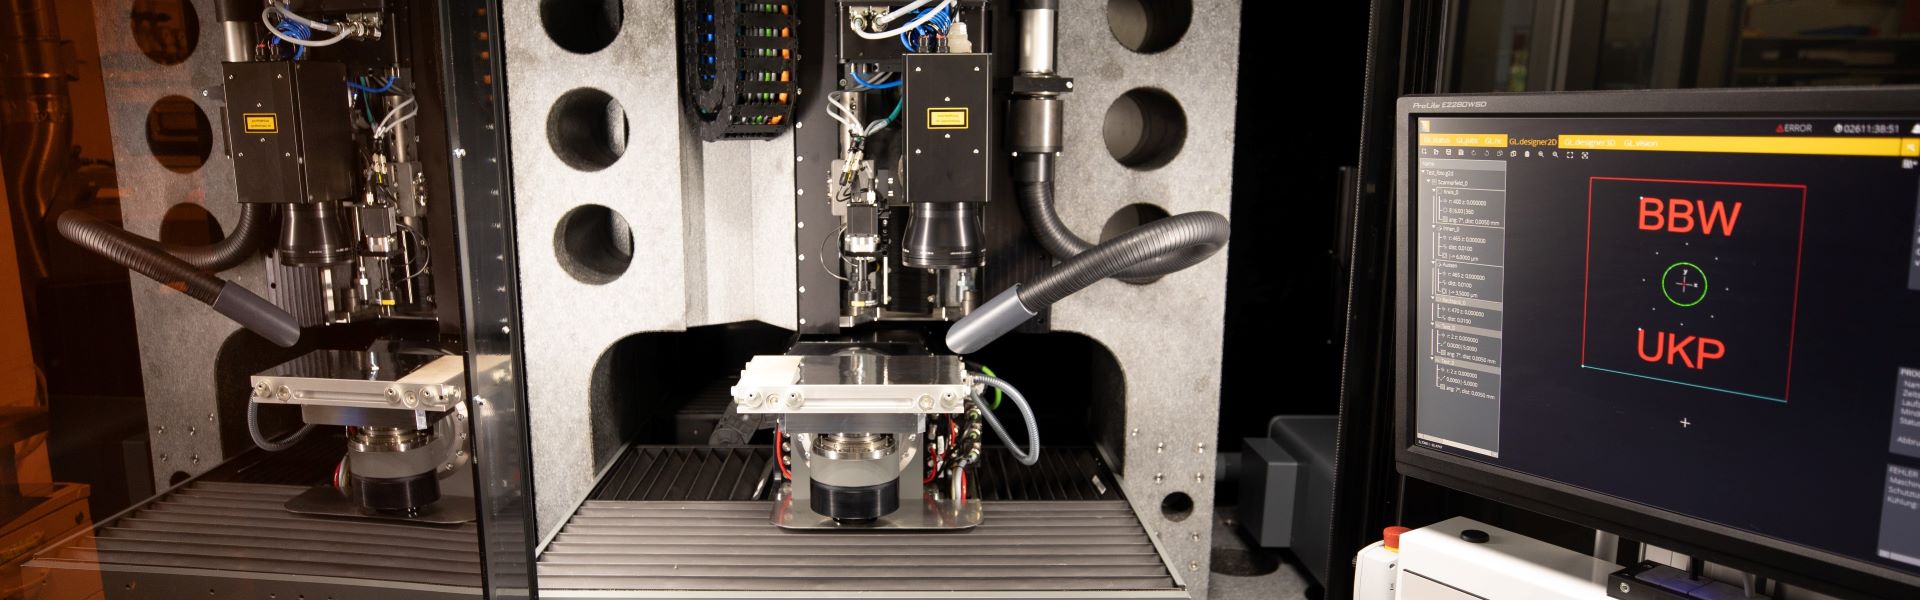 BBW Lasertechnik UKP-Bearbeitung im Bereich Lasermaterialbearbeitung